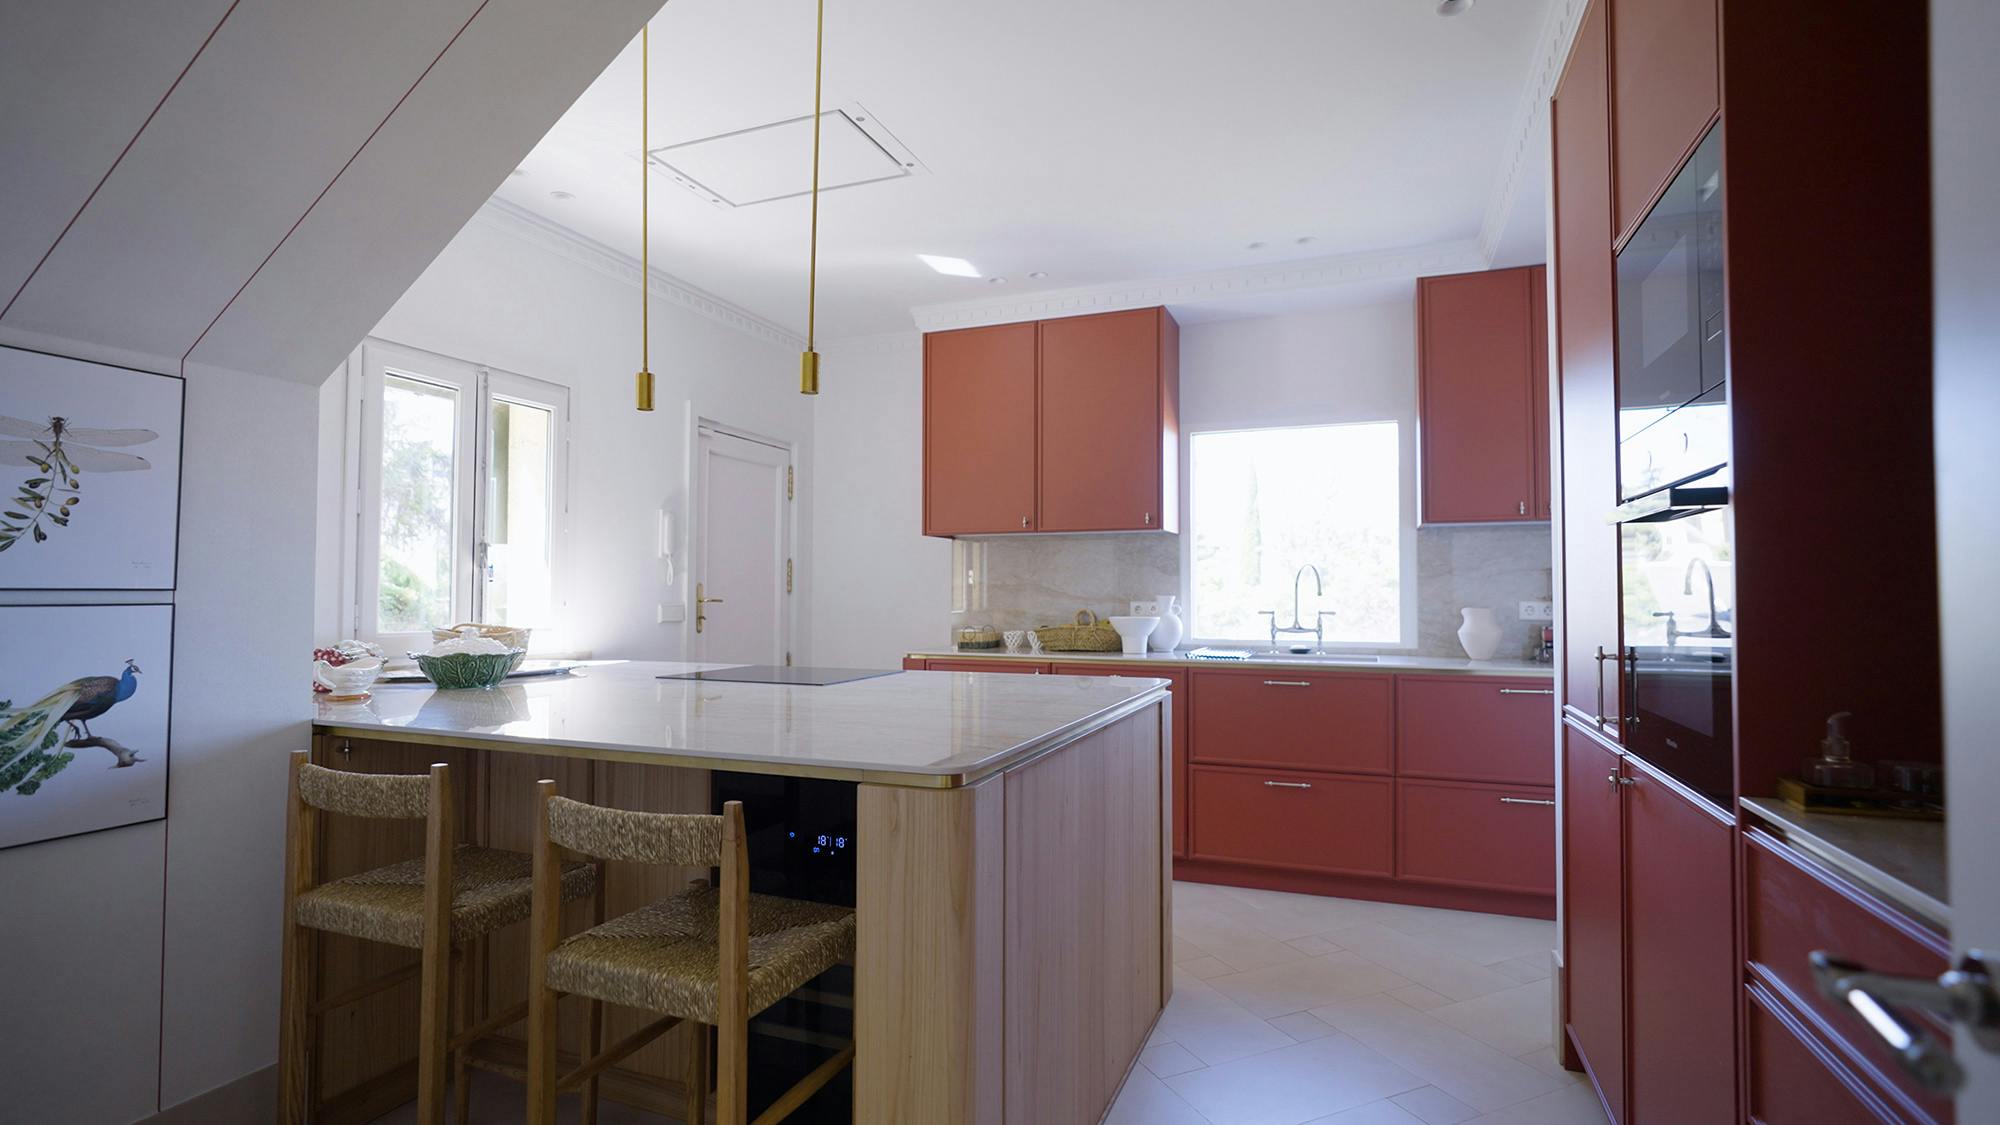 Numero immagine 32 della sezione corrente di Architect Pils Ferrer chooses DKTN for the renovation of her home, where the kitchen speaks for itself di Cosentino Italia